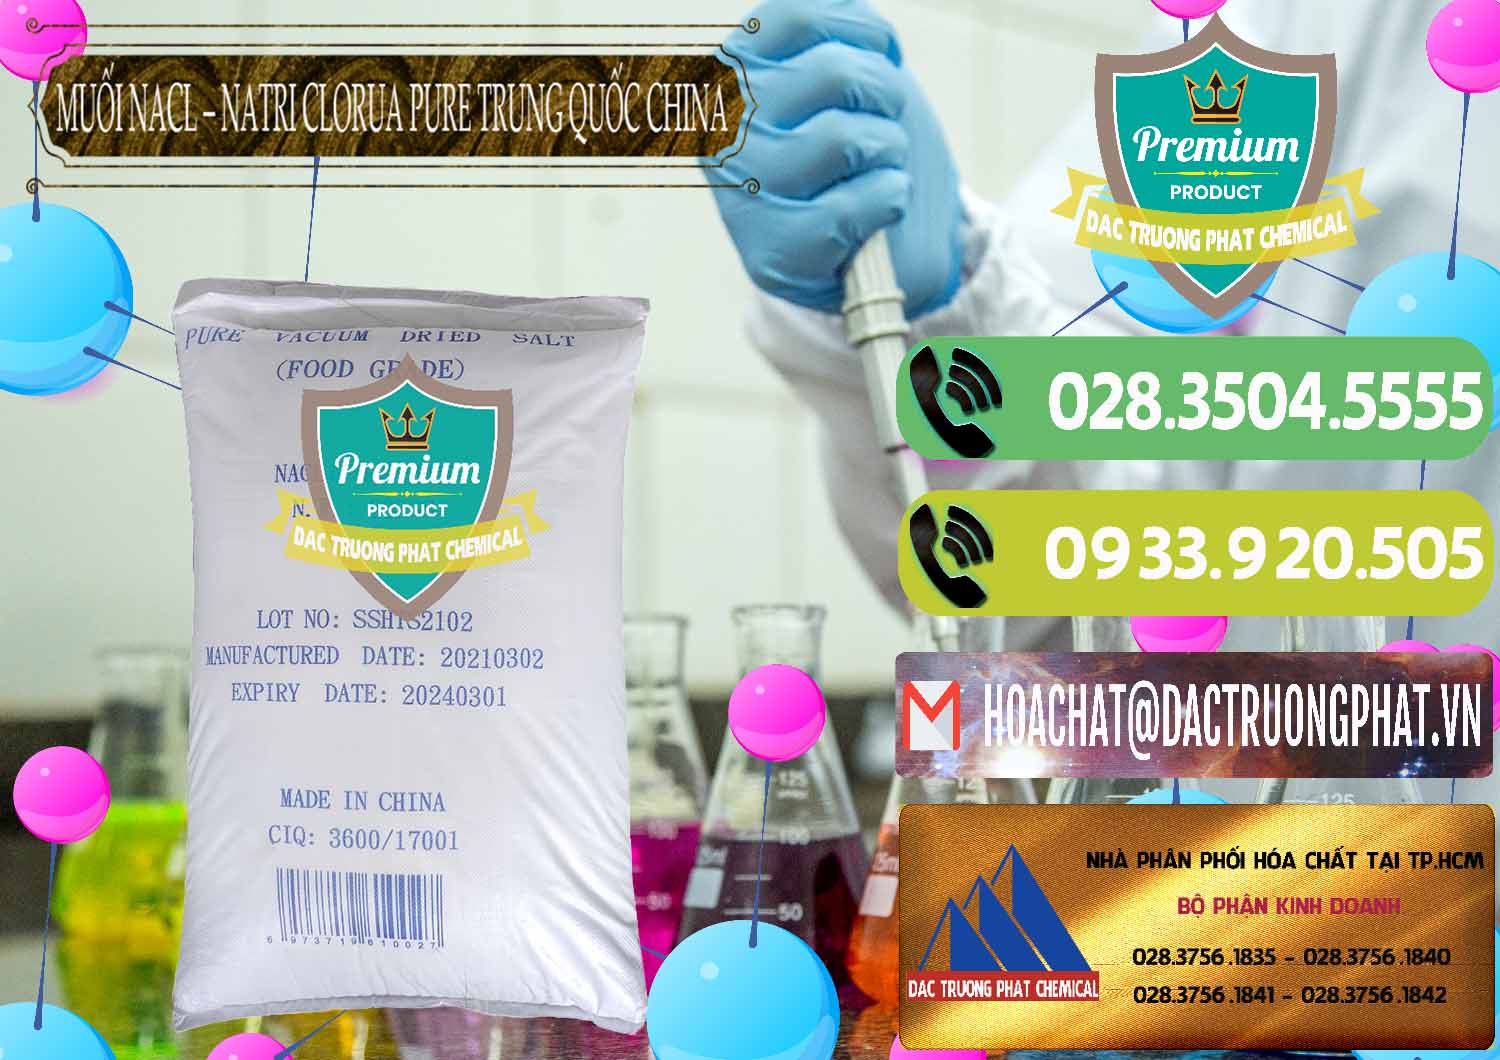 Đơn vị chuyên cung ứng & bán Muối NaCL – Sodium Chloride Pure Trung Quốc China - 0230 - Nhập khẩu và phân phối hóa chất tại TP.HCM - hoachatmientay.vn